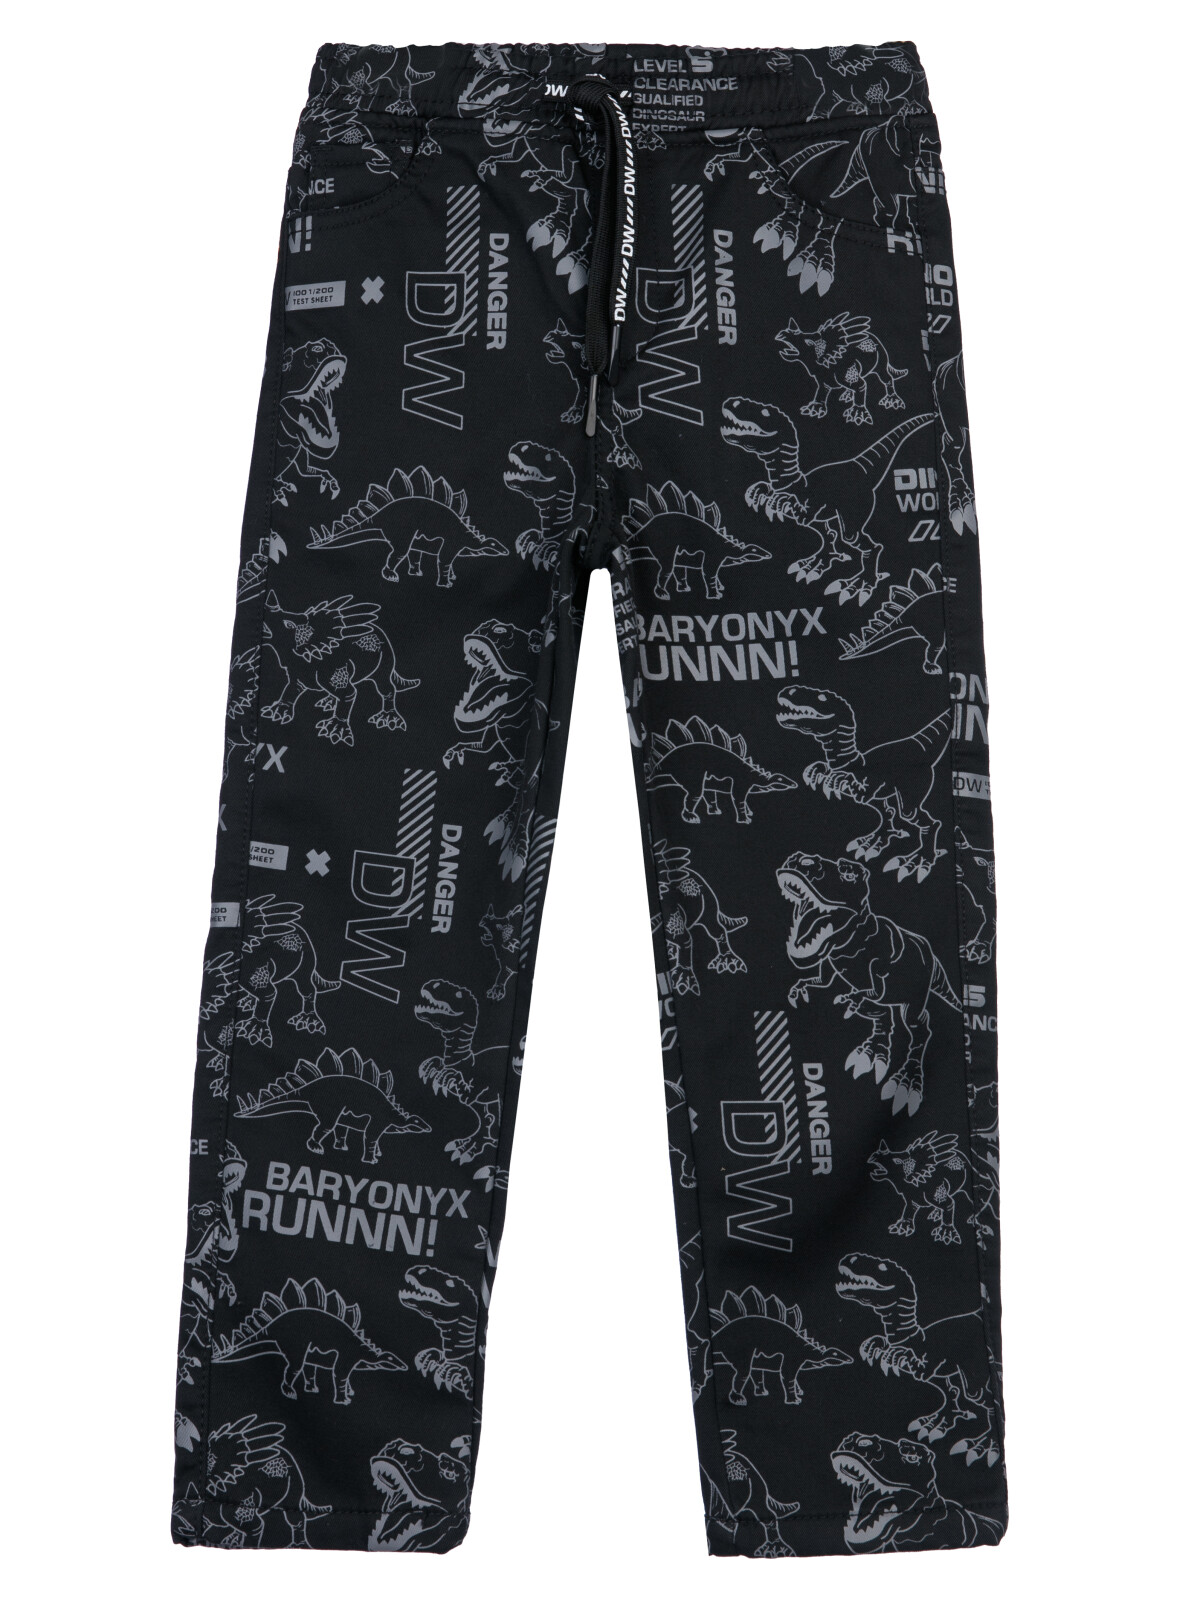 Брюки текстильные джинсовые утепленные флисом для мальчиков PlayToday, тёмно-синий, 110